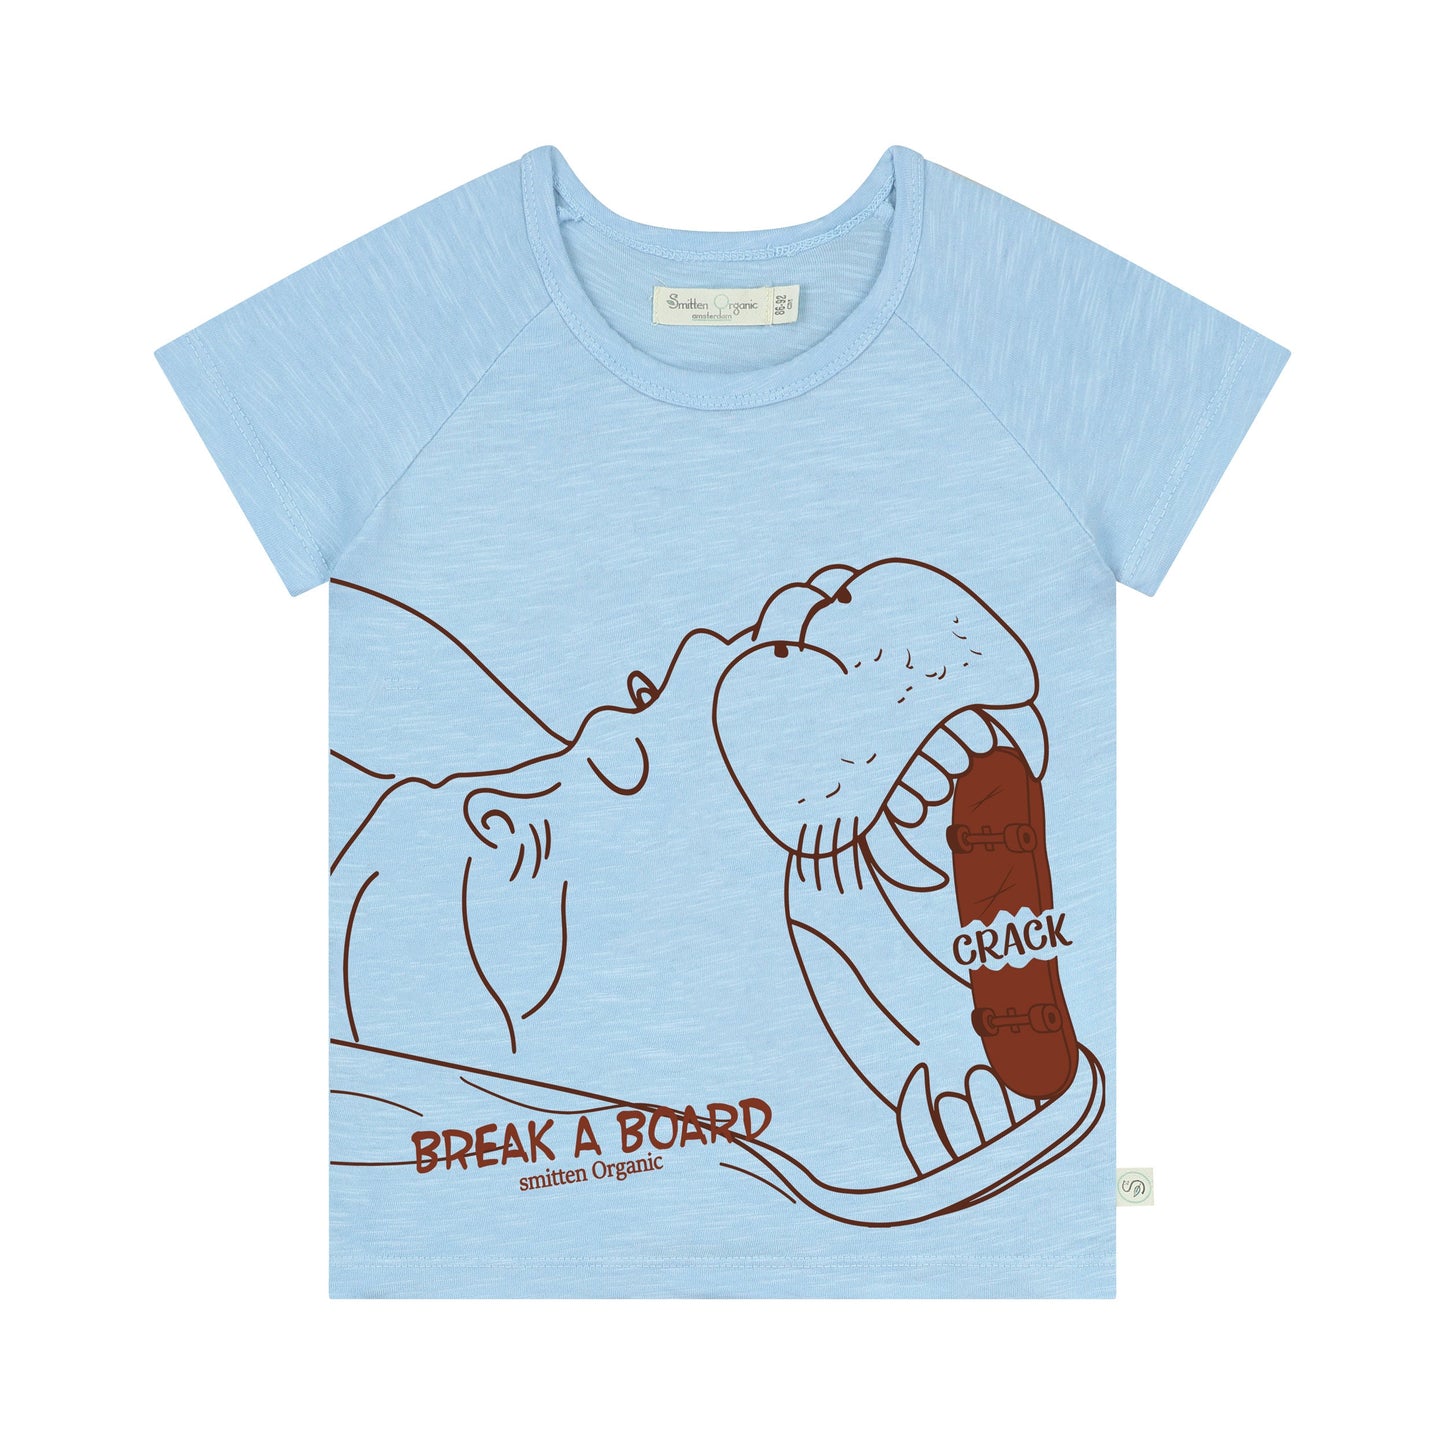 Kurzärmliges blaues T-Shirt des Flusspferds, das Skateboard knackt